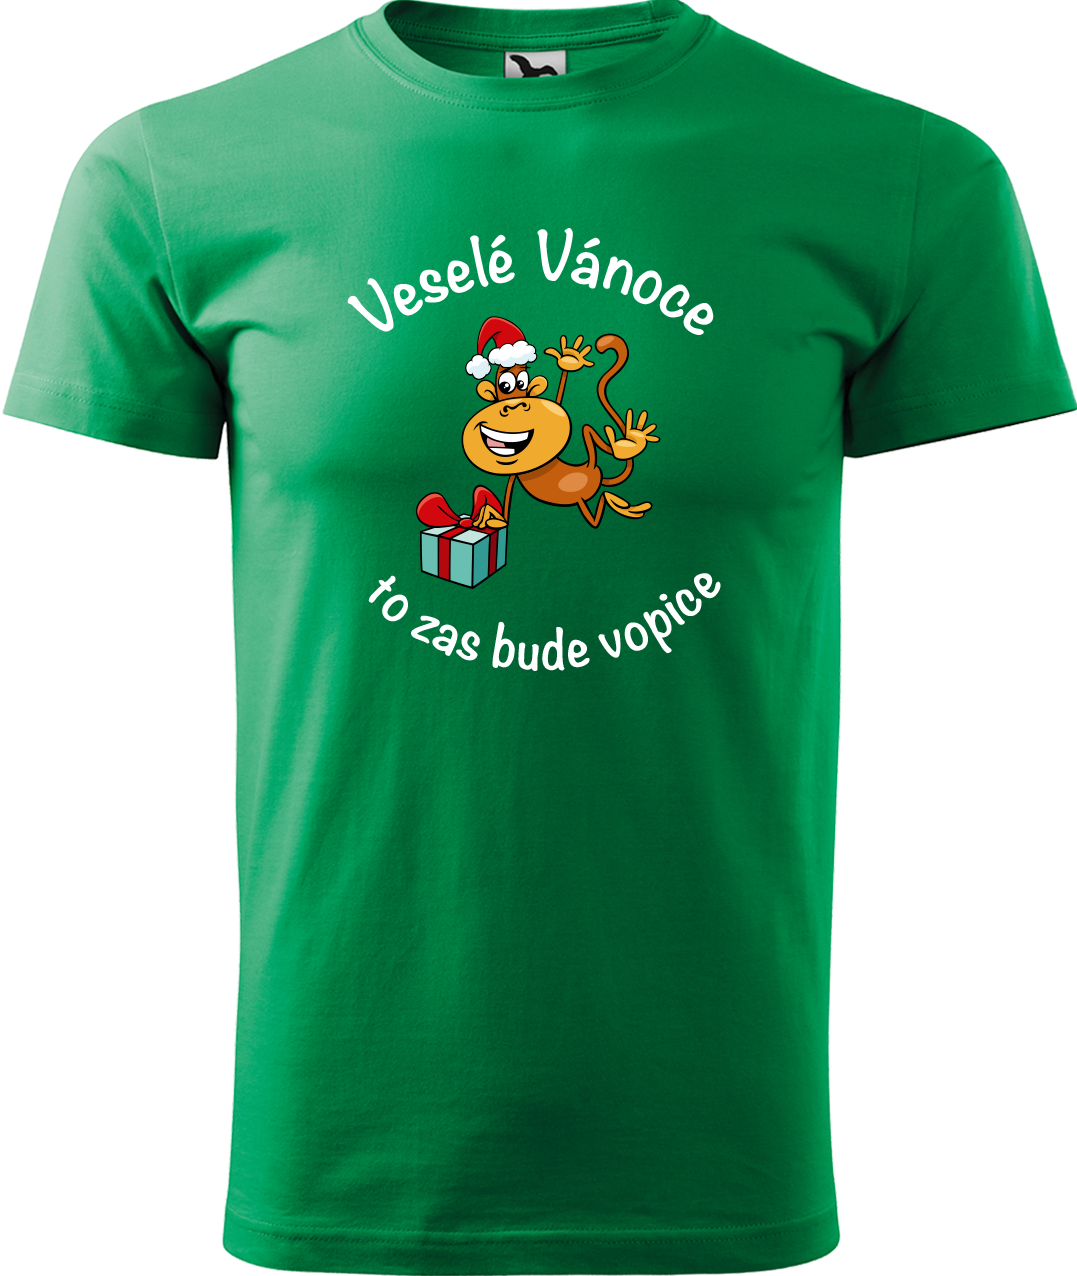 Pánské vánoční tričko - Veselé Vánoce to zas bude vopice Velikost: S, Barva: Středně zelená (16)